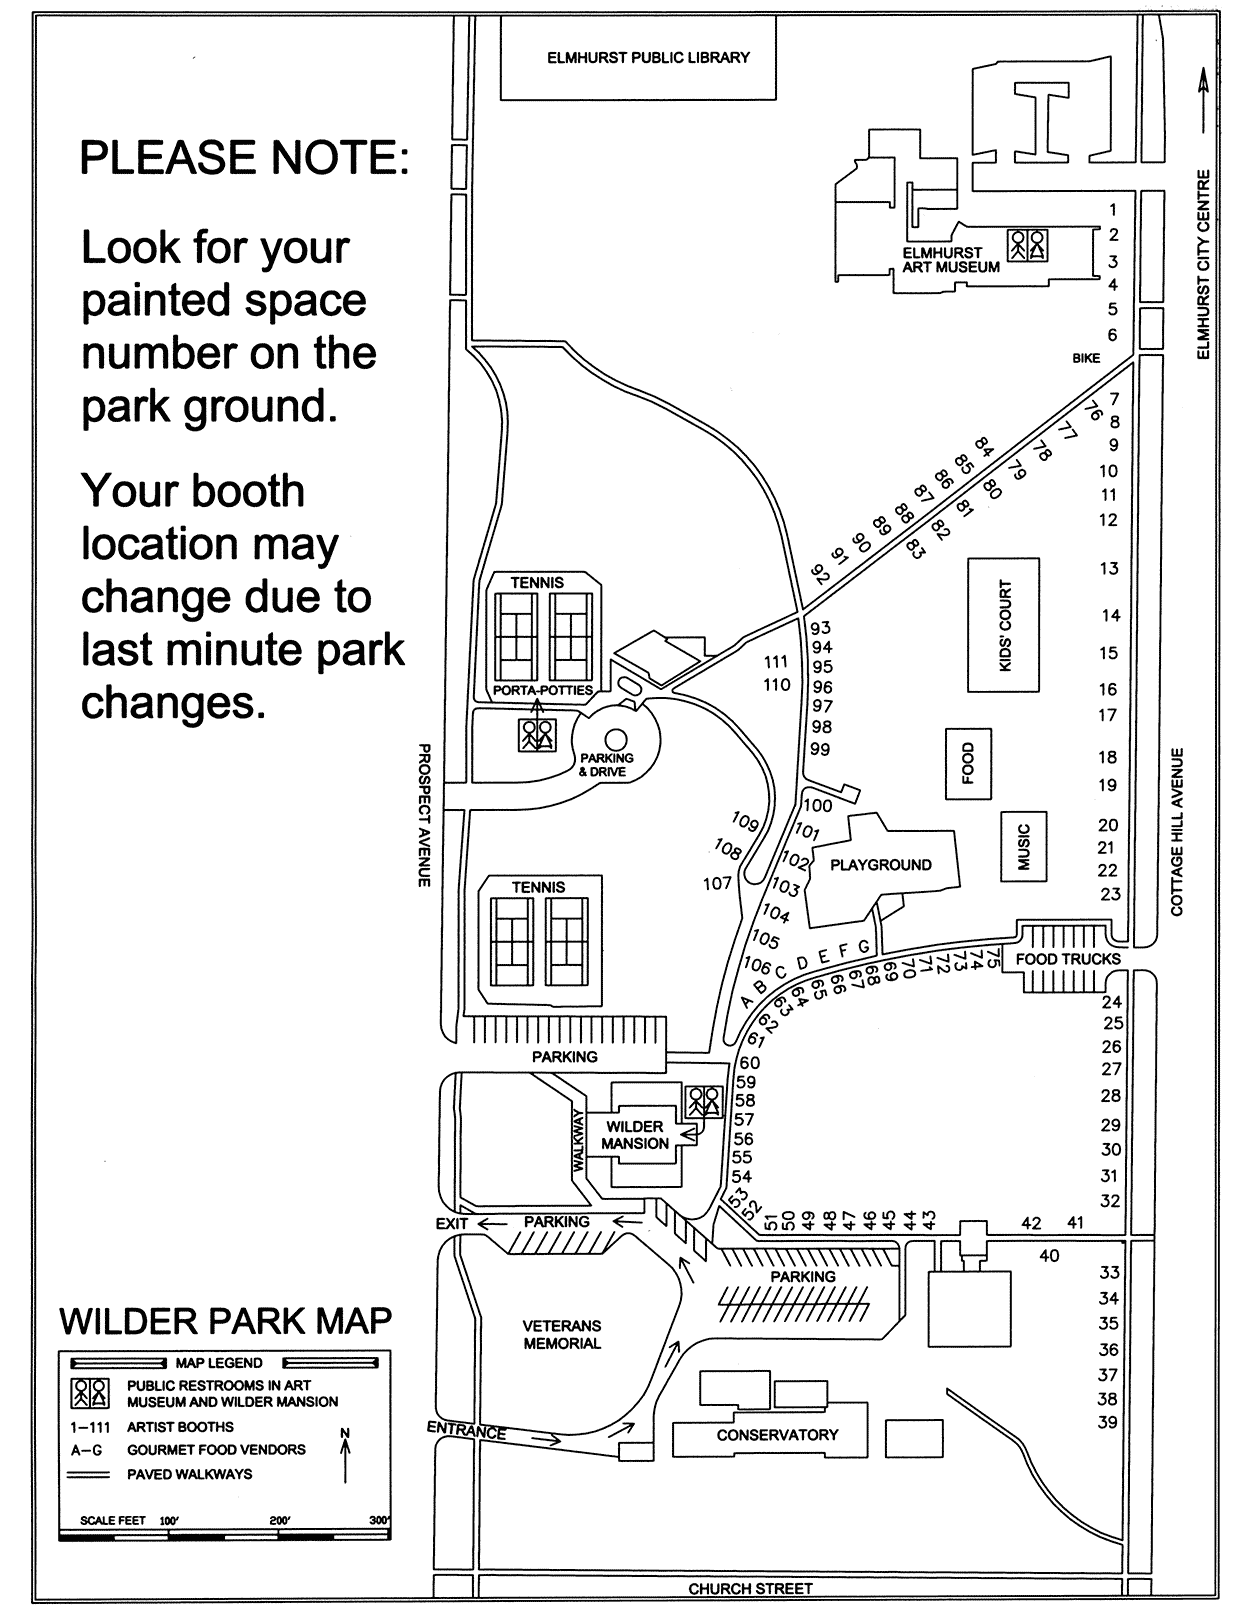 Wilder Park Elmhurst Map